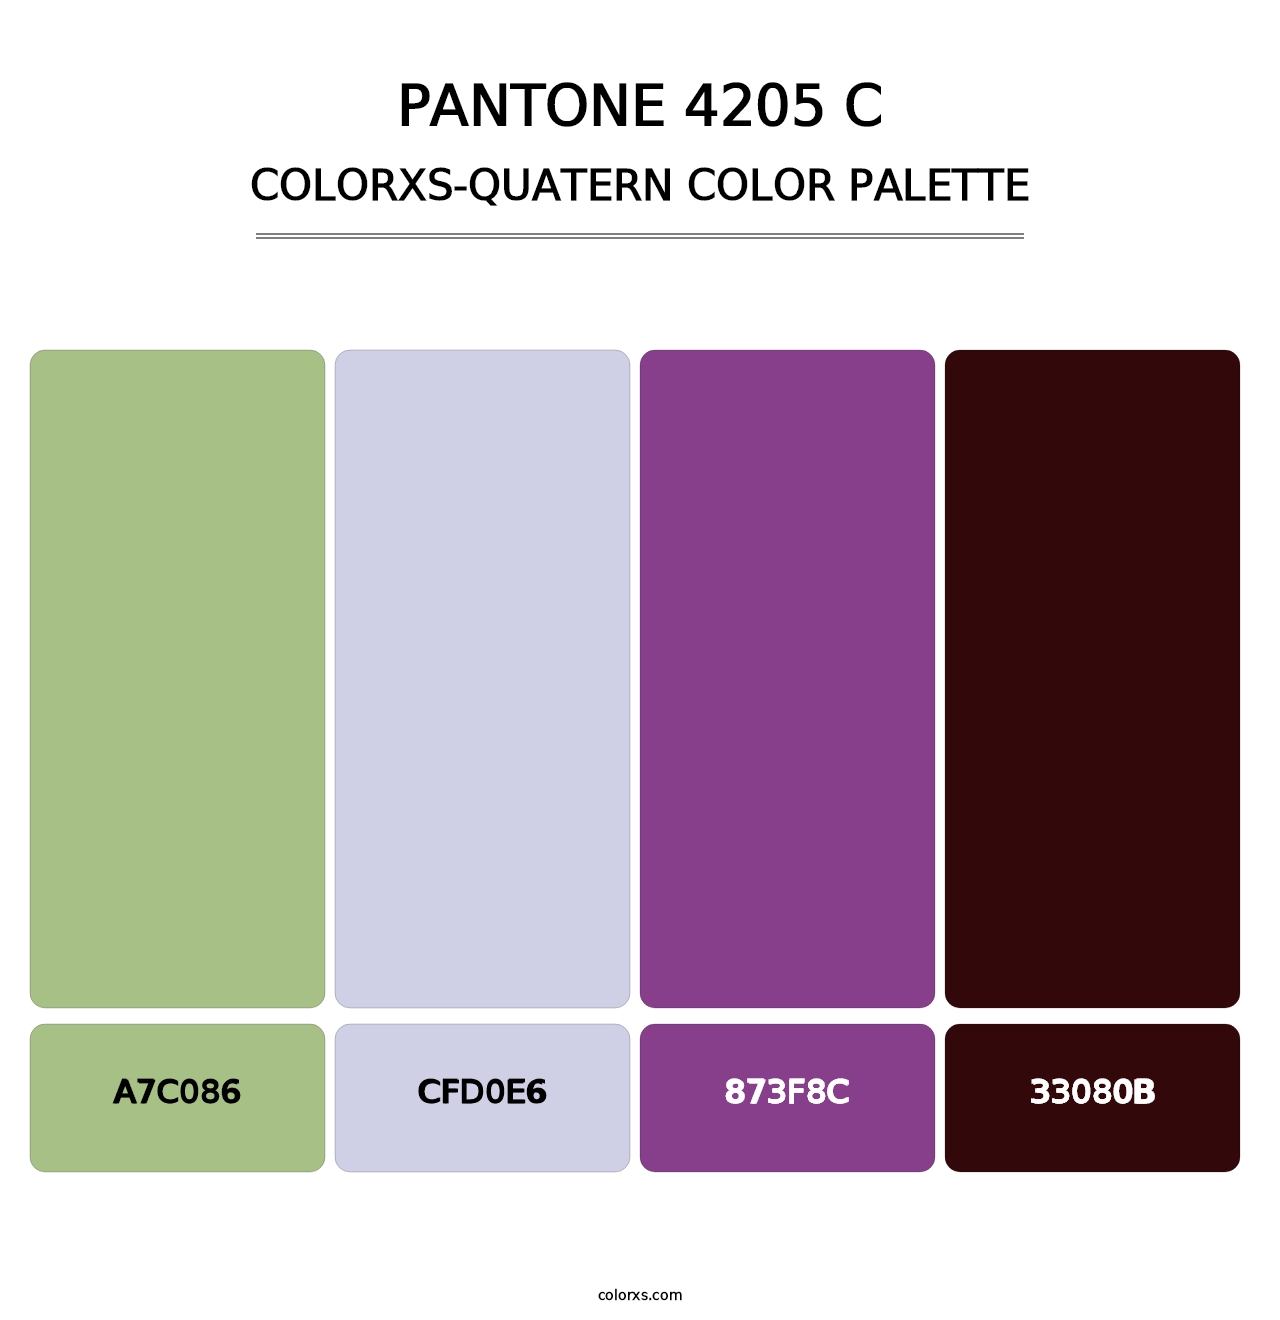 PANTONE 4205 C - Colorxs Quatern Palette